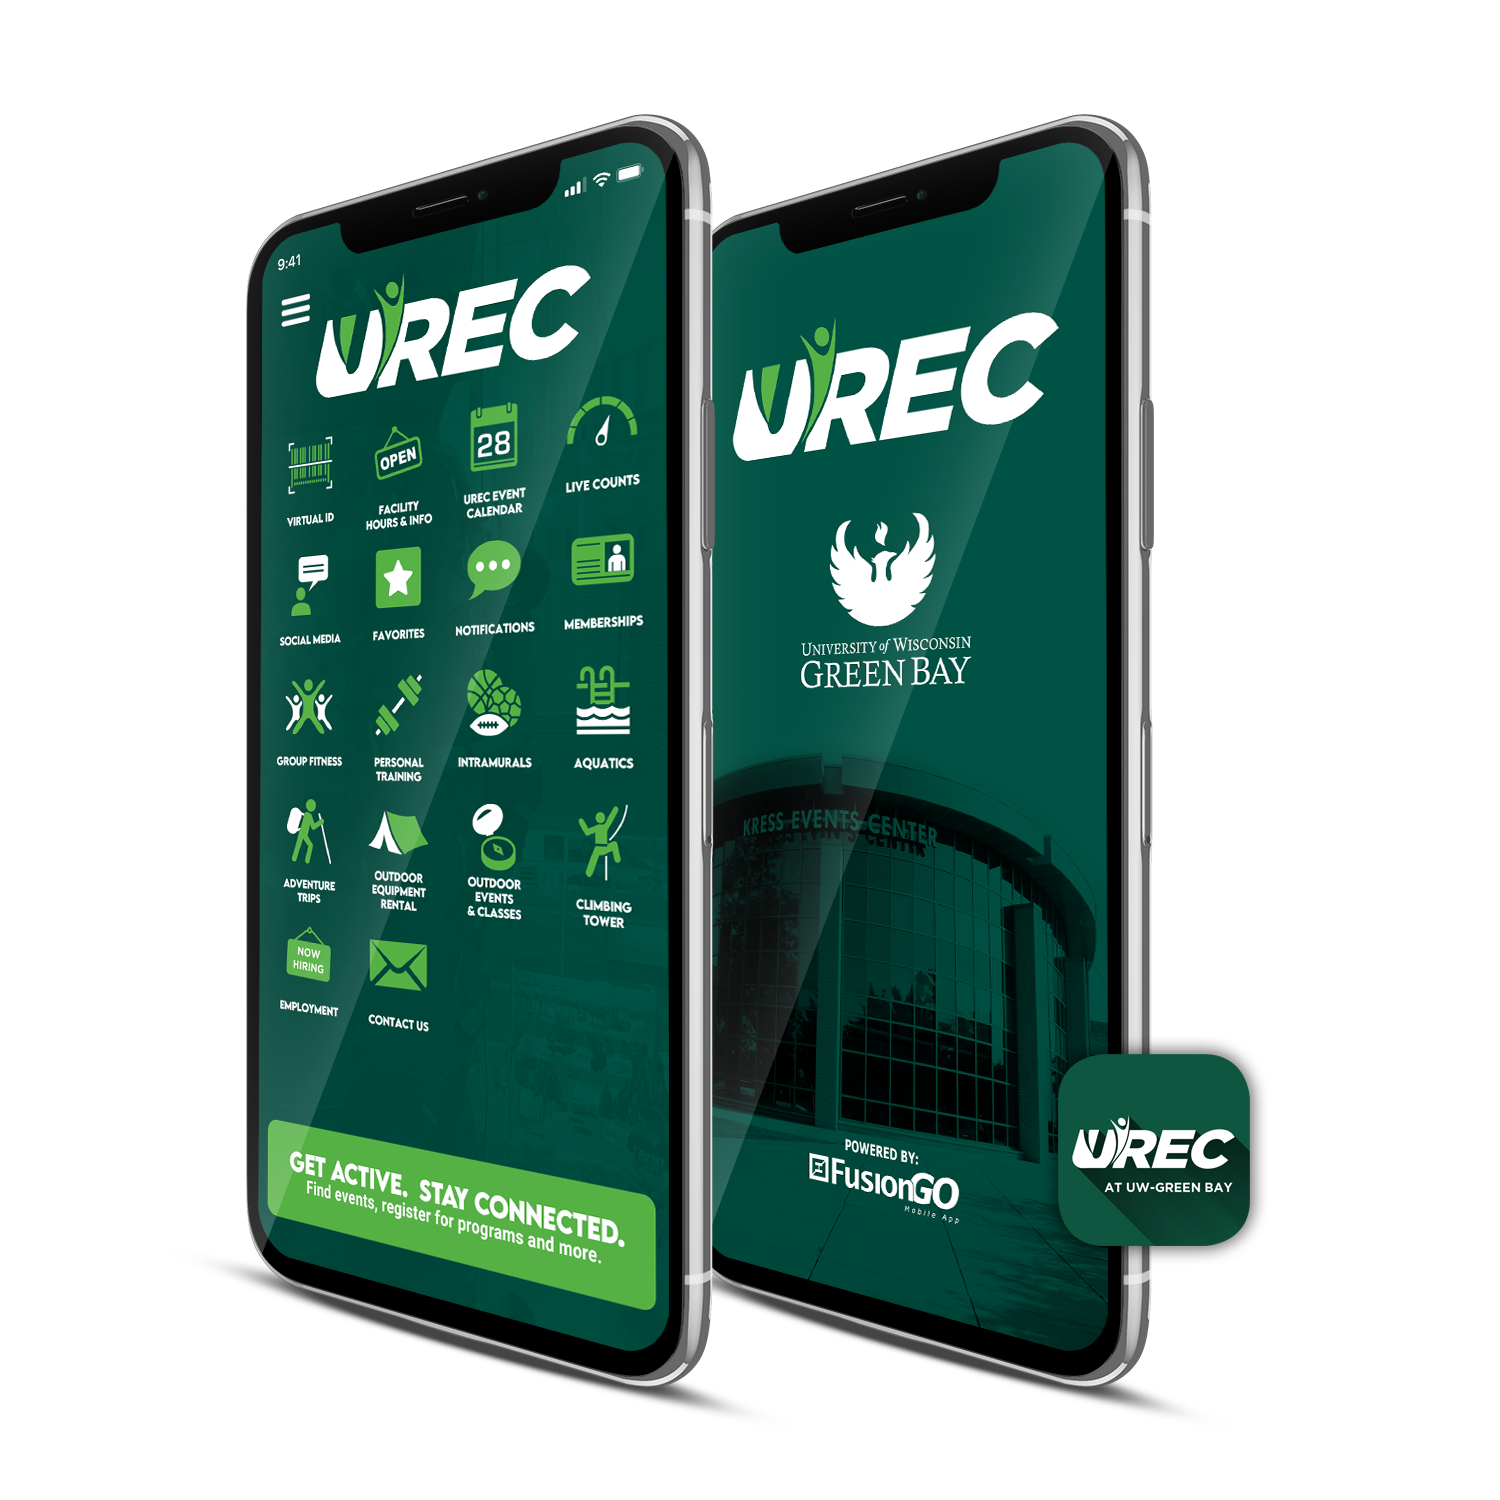 Smart phone with the UREC app open